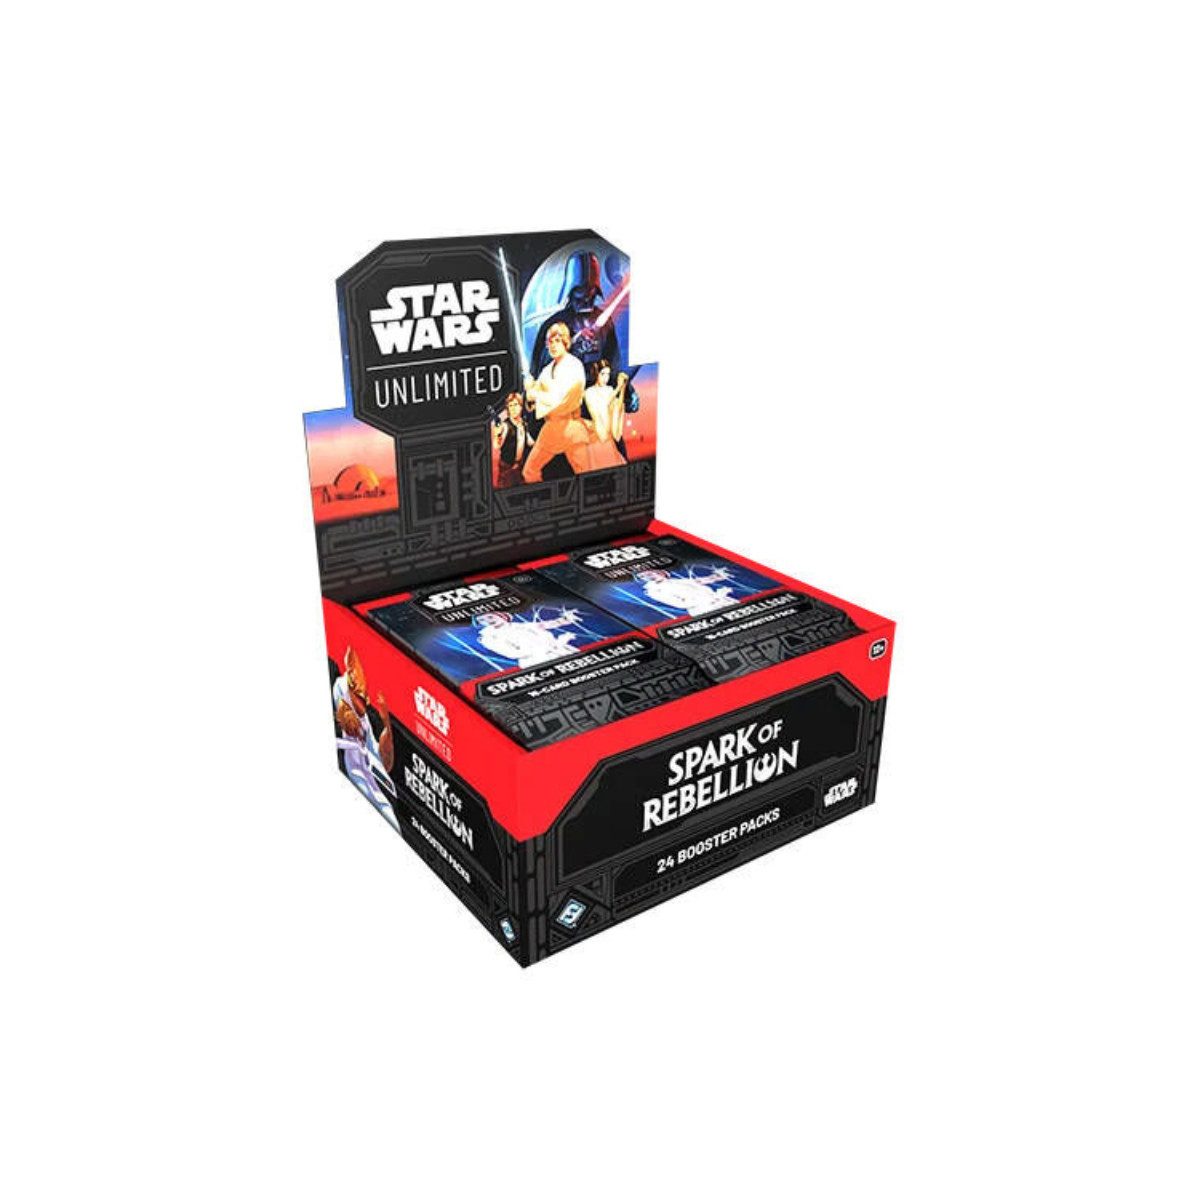 Fantasy Flight Games Sammelkarte Star Wars Unlimited: Der Funke einer Rebellion Booster Display, (englisch) - 24 Booster Packs